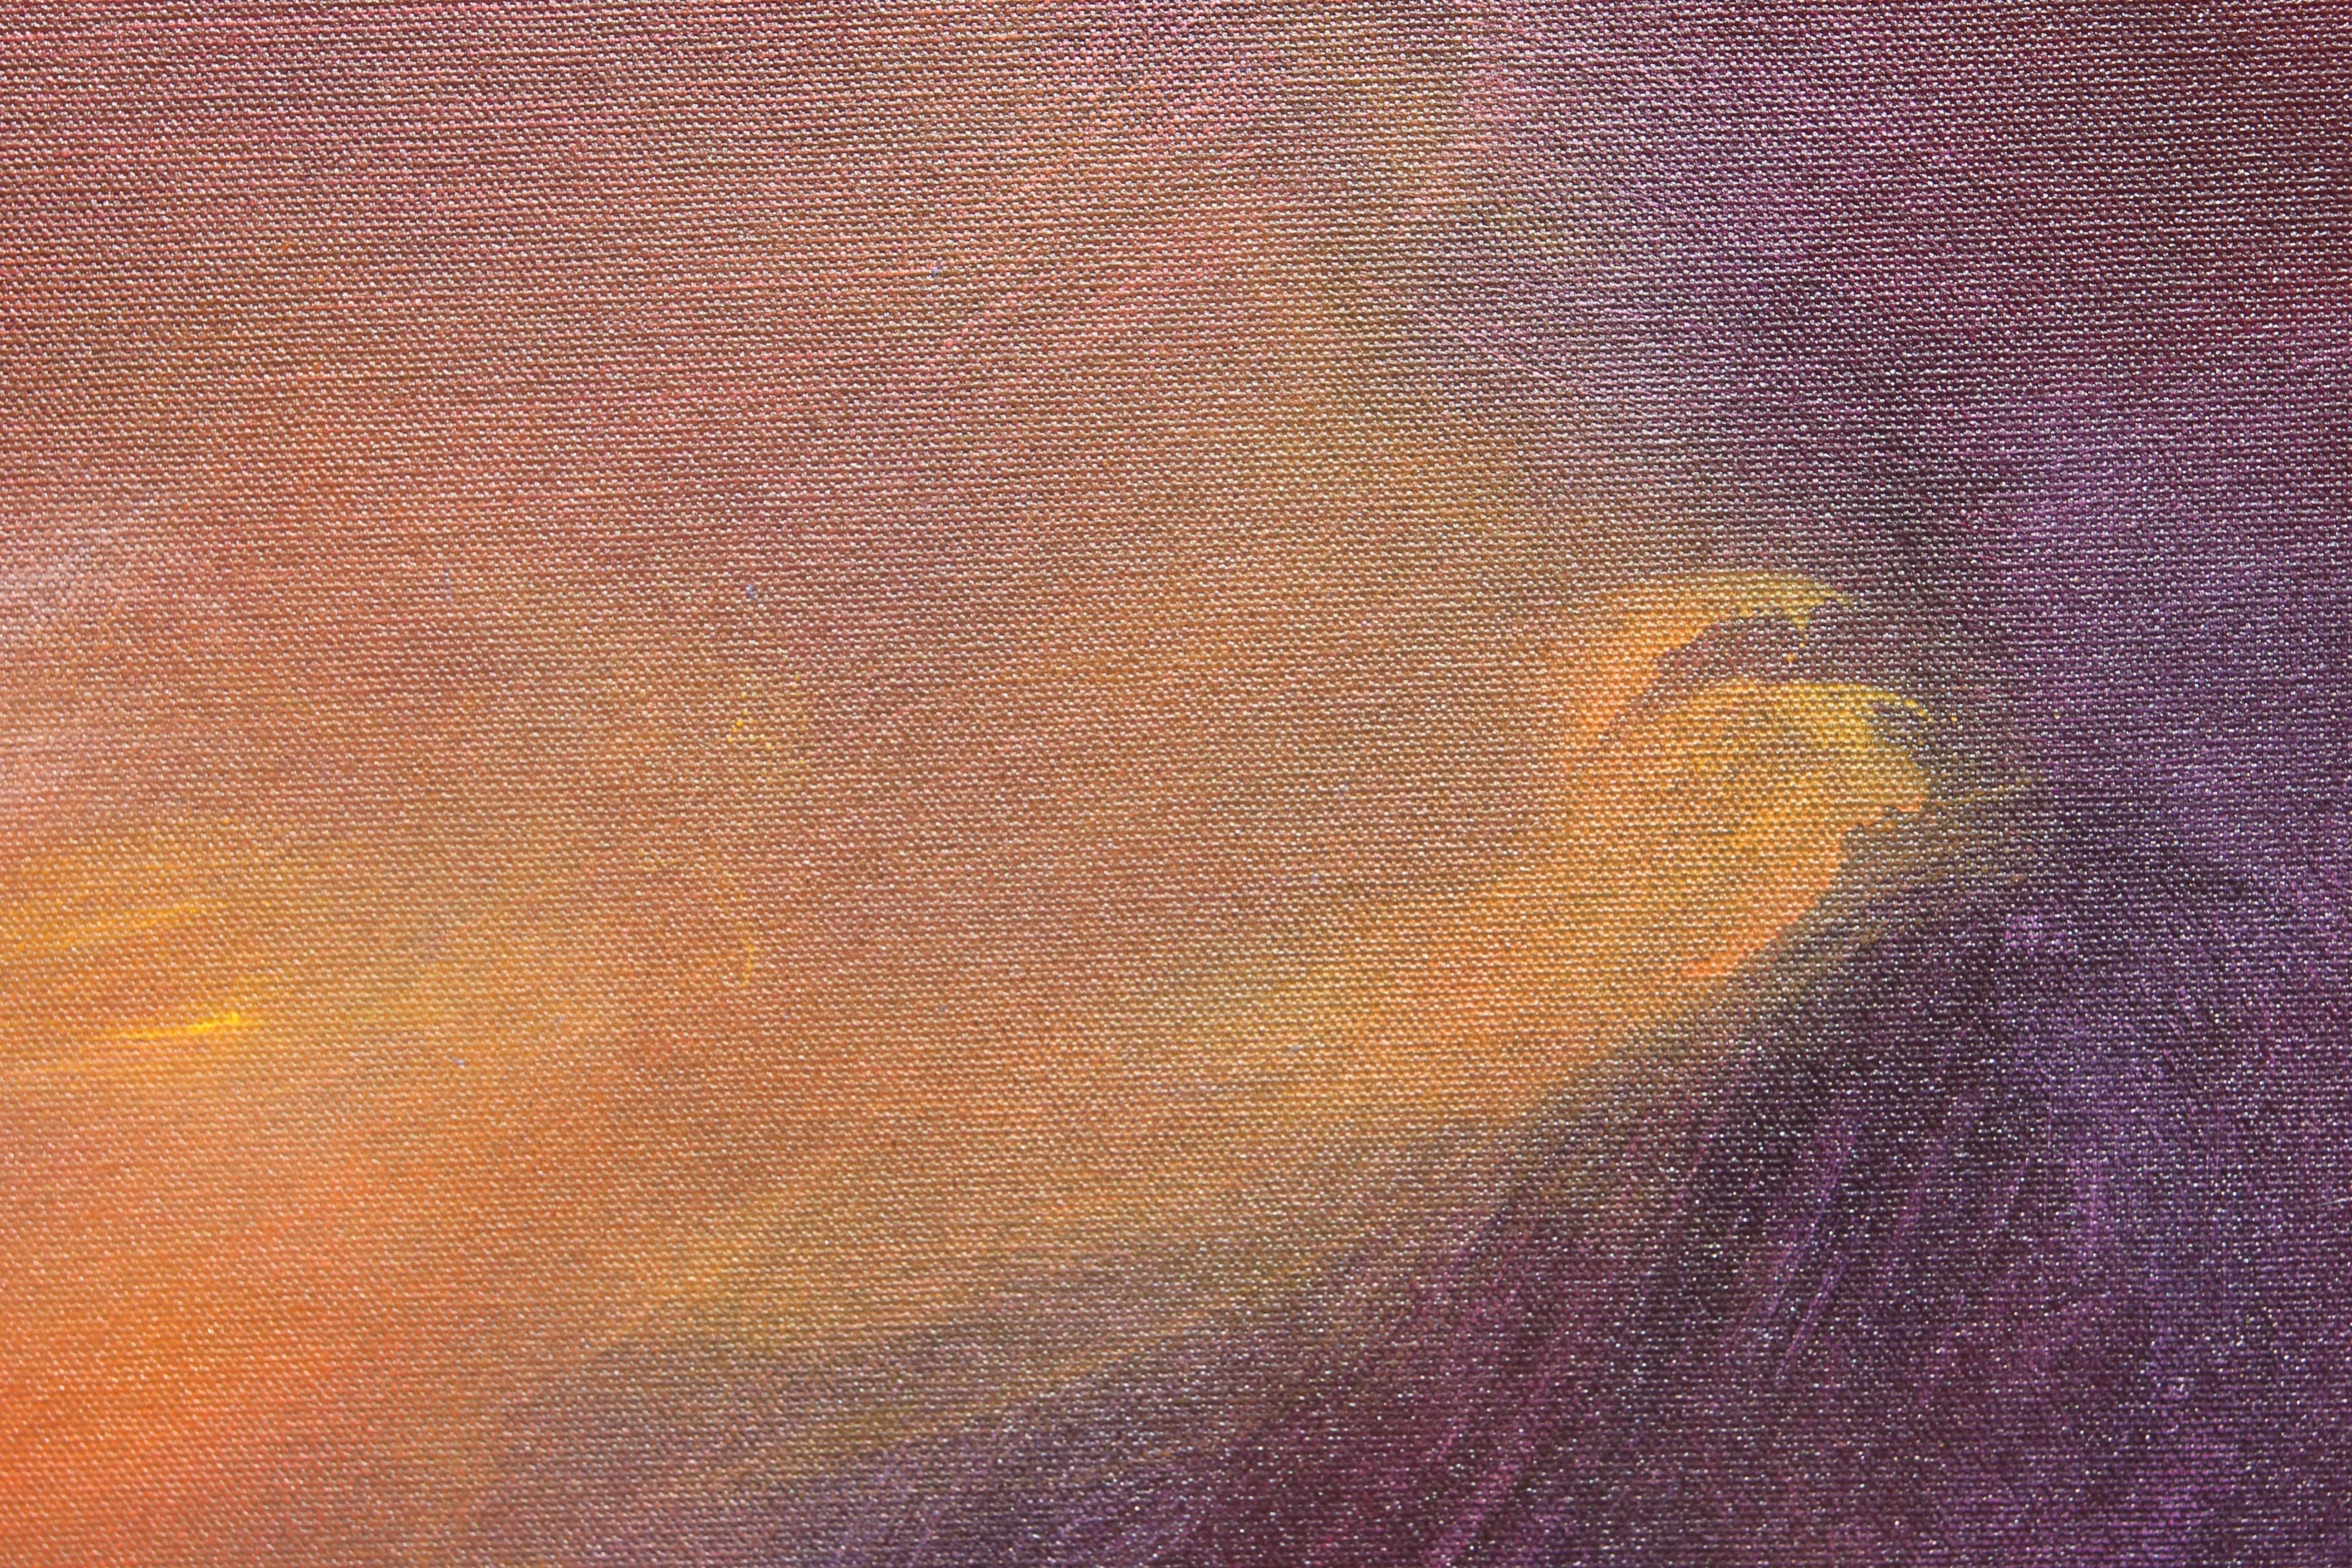 Grande peinture expressionniste abstraite influencée par Mark Rothko qui se compose de tons rouges, orange et bleus. La toile est signée, titrée et datée par l'artiste. La toile n'est pas encadrée. Cette peinture fait partie de la série 